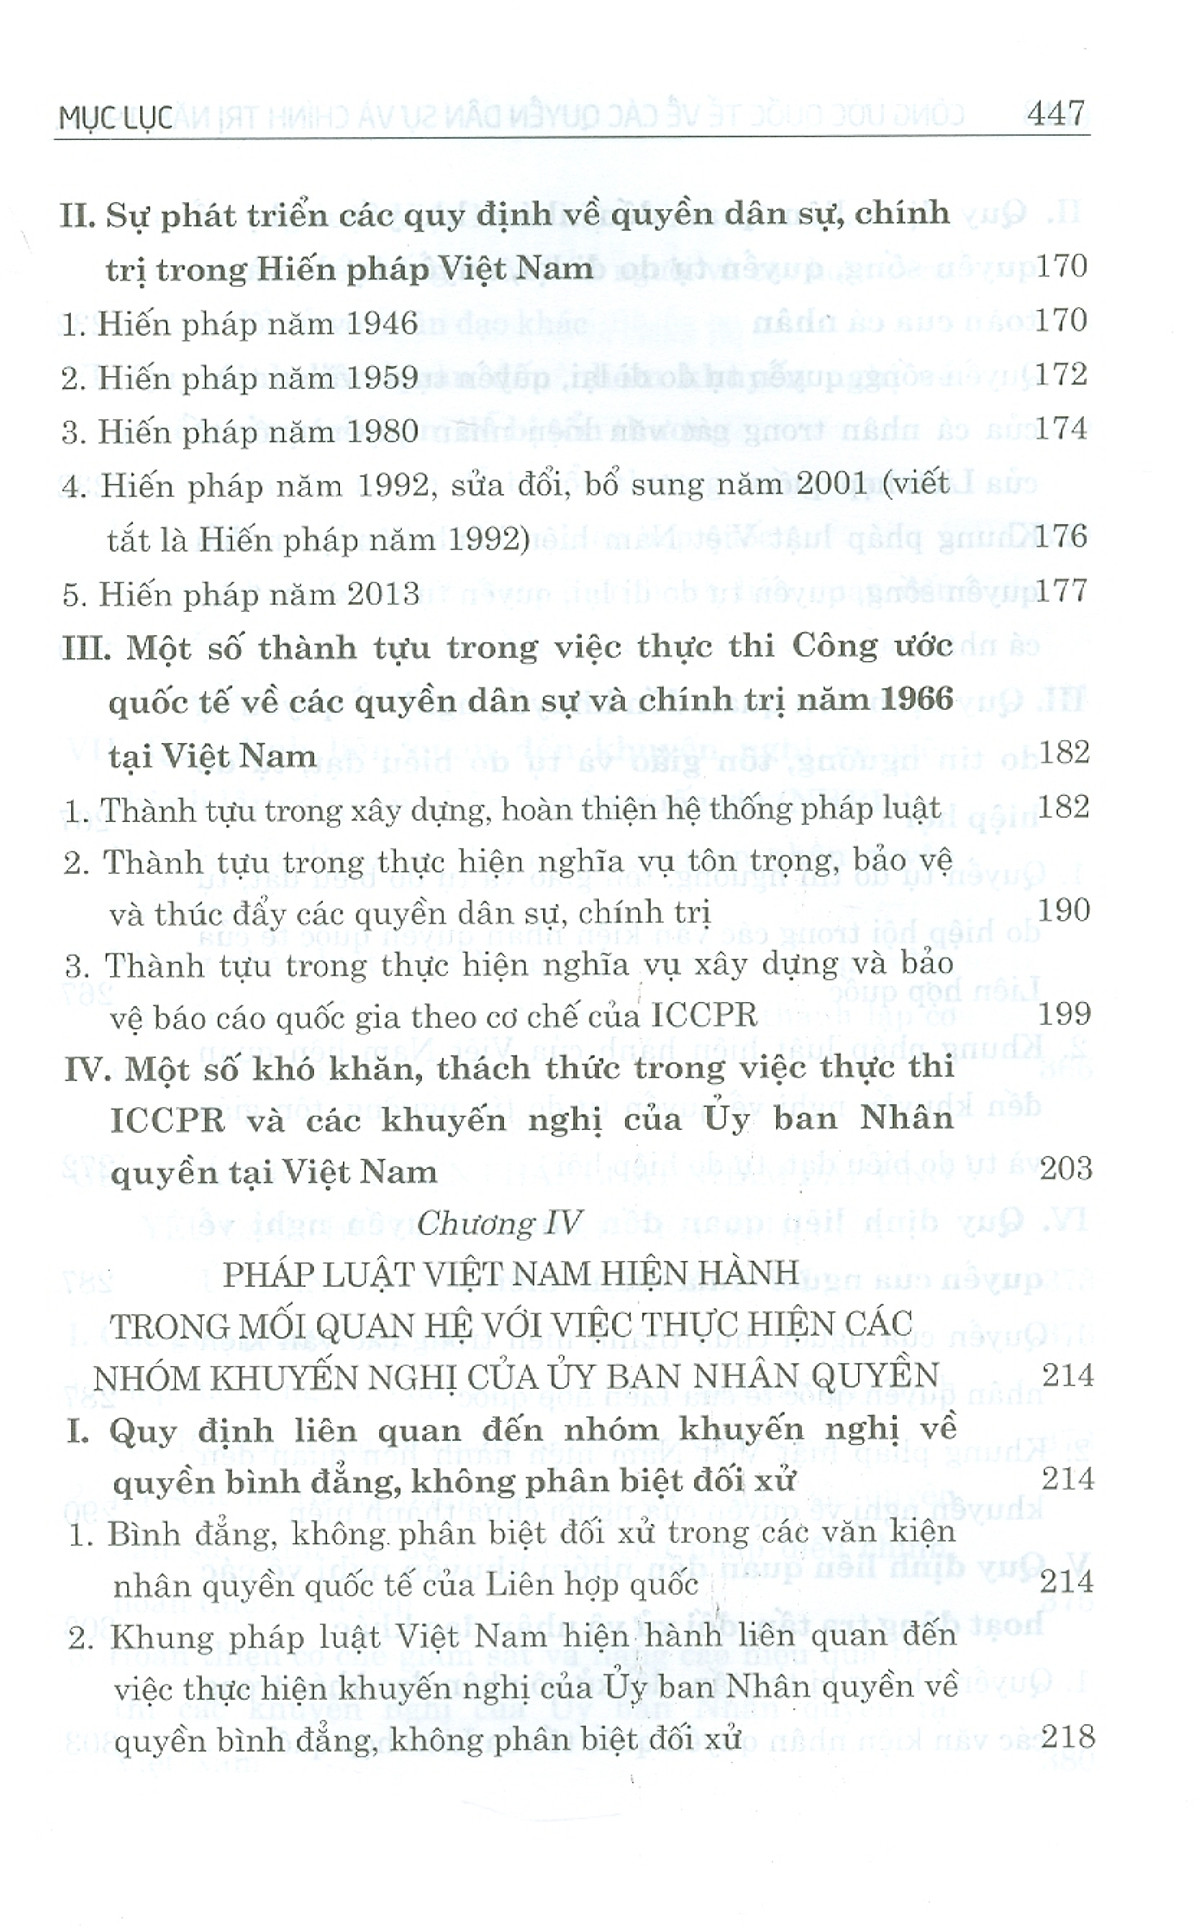 Công Ước Quốc Tế Về Các Quyền Dân Sự Và Chính Trị Năm 1966 Và Việc Thực Thi Các Khuyến Nghị Của Ủy Ban Nhân Quyền Tại Việt Nam PDF